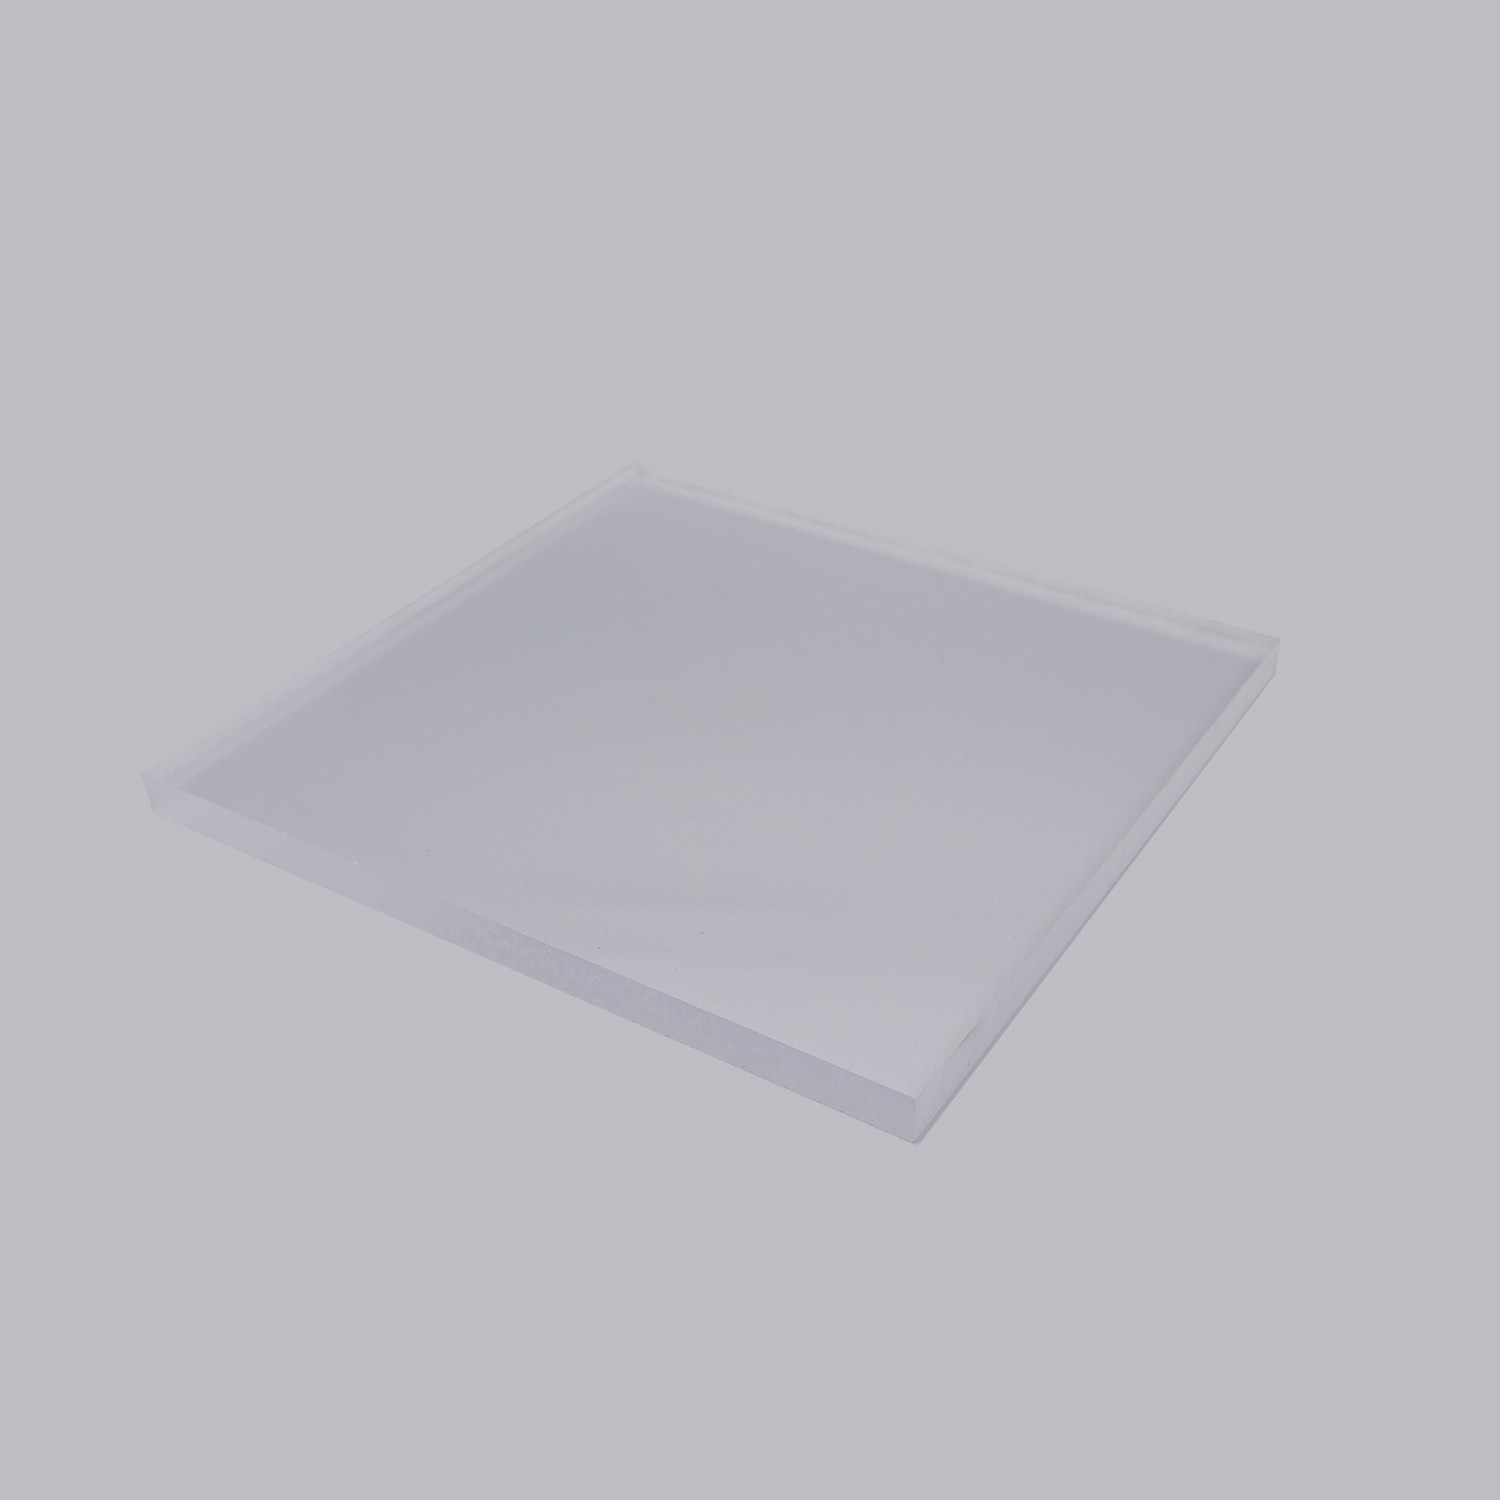 Supply 5mm 6mm high gloss clear acrylic sheet plexiglass sheet